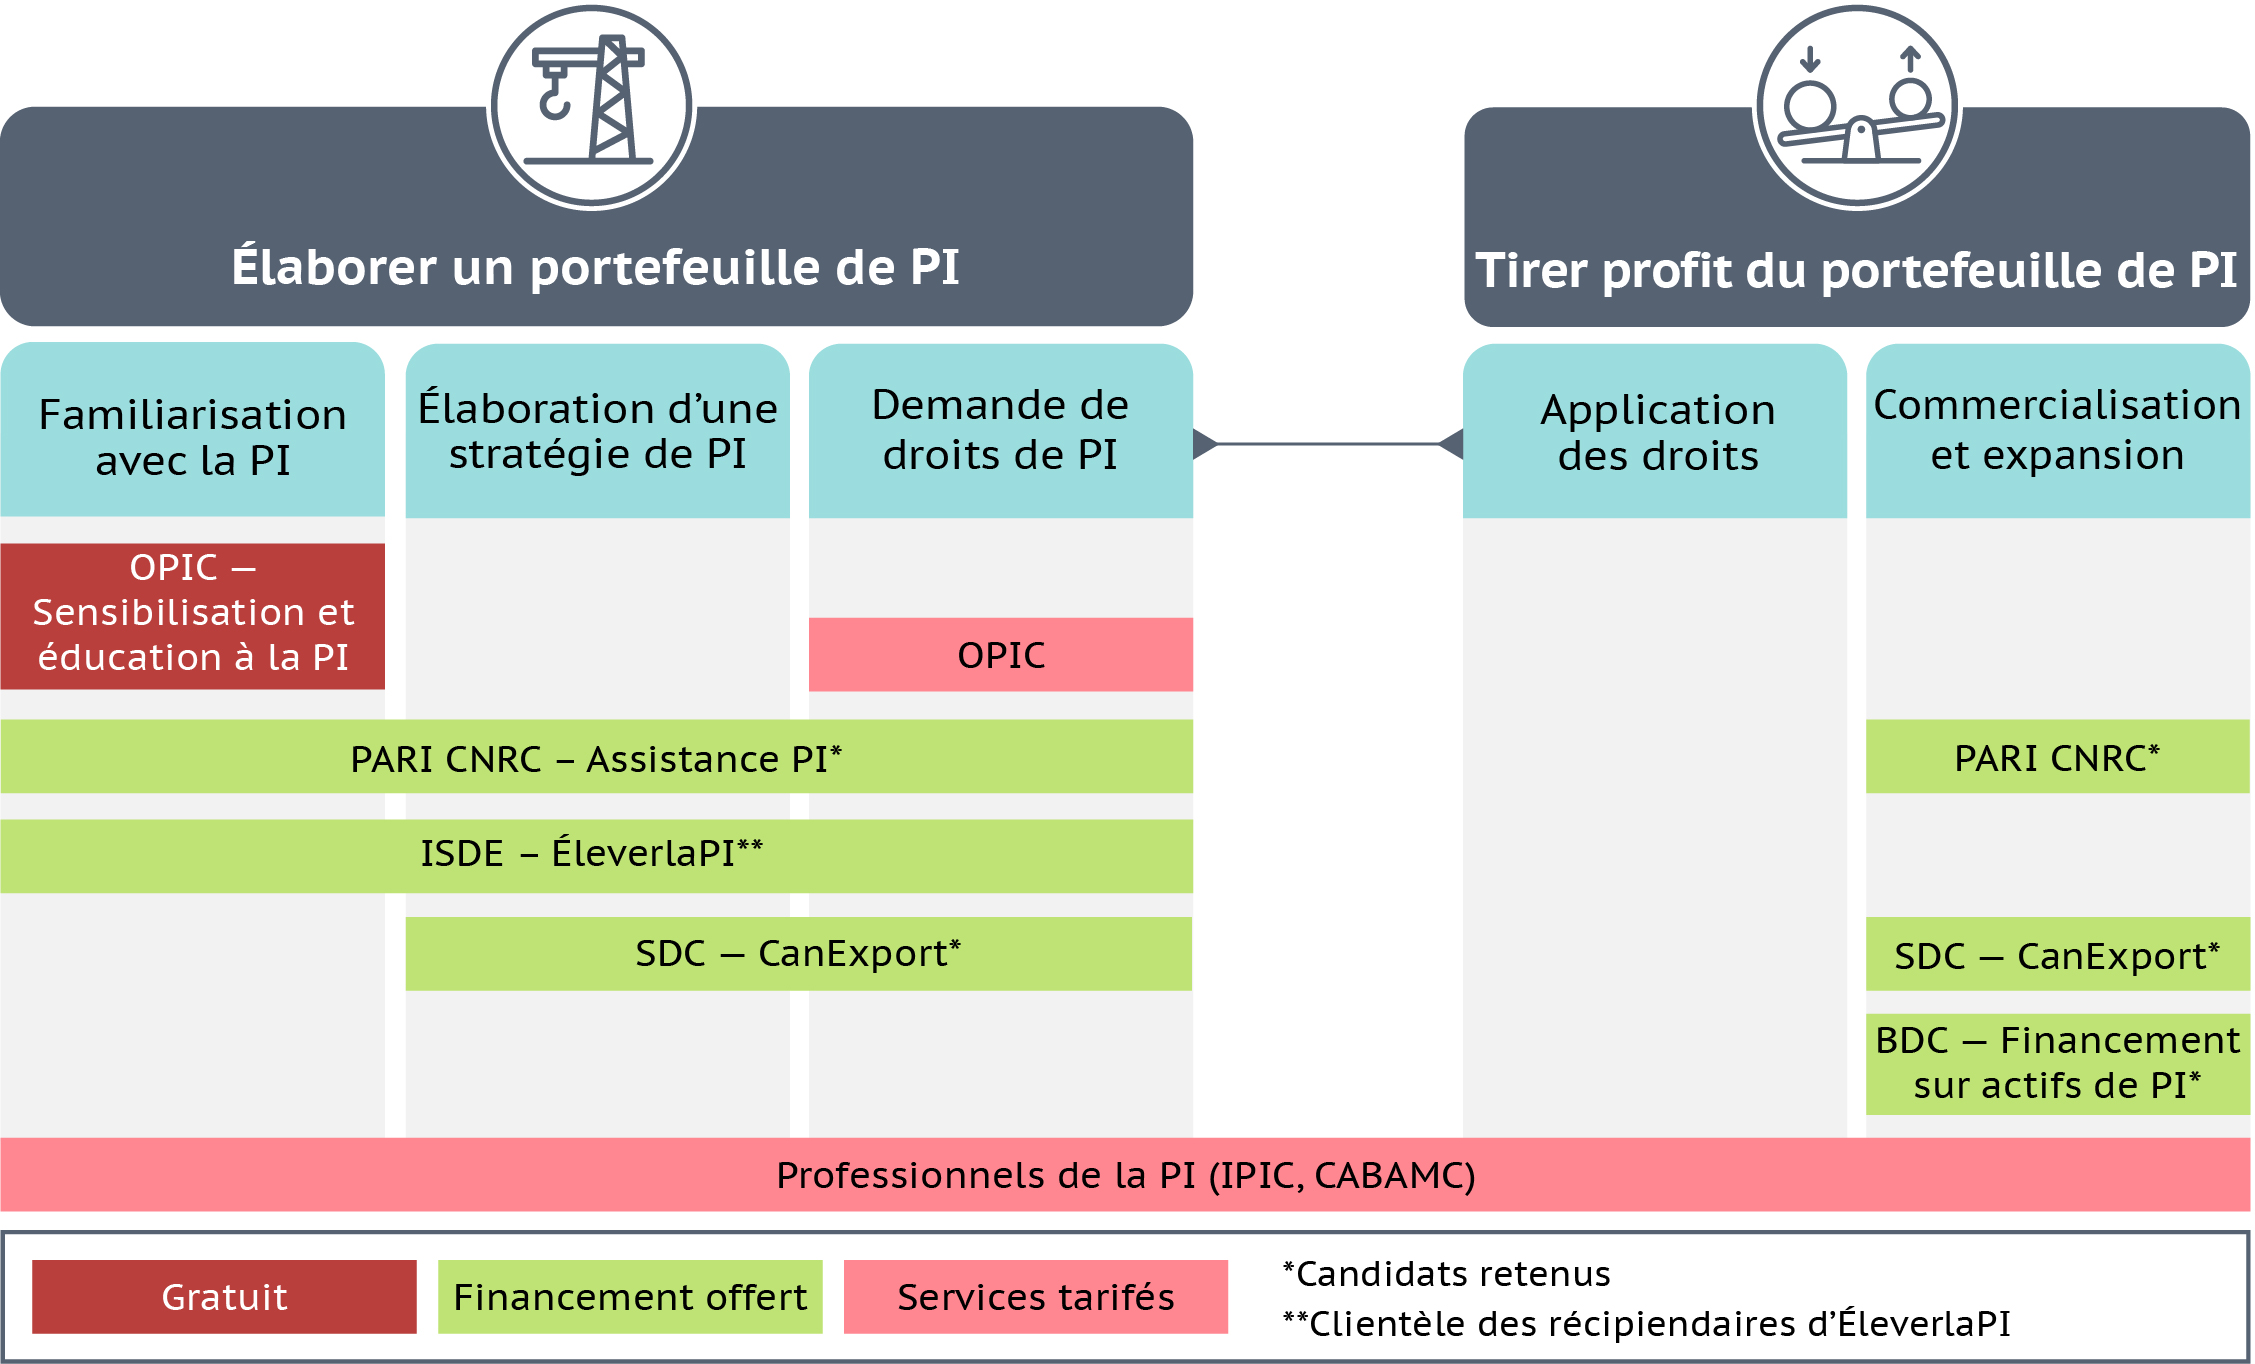 Un graphique montrant comment les partenaires du Village de la PI peuvent aider les entreprises canadiennes tout au long de leur parcours en matière de PI. Le graphique montre les 5 phases du parcours de PI et indique la phase pour laquelle chaque partenaire peut apporter son aide.